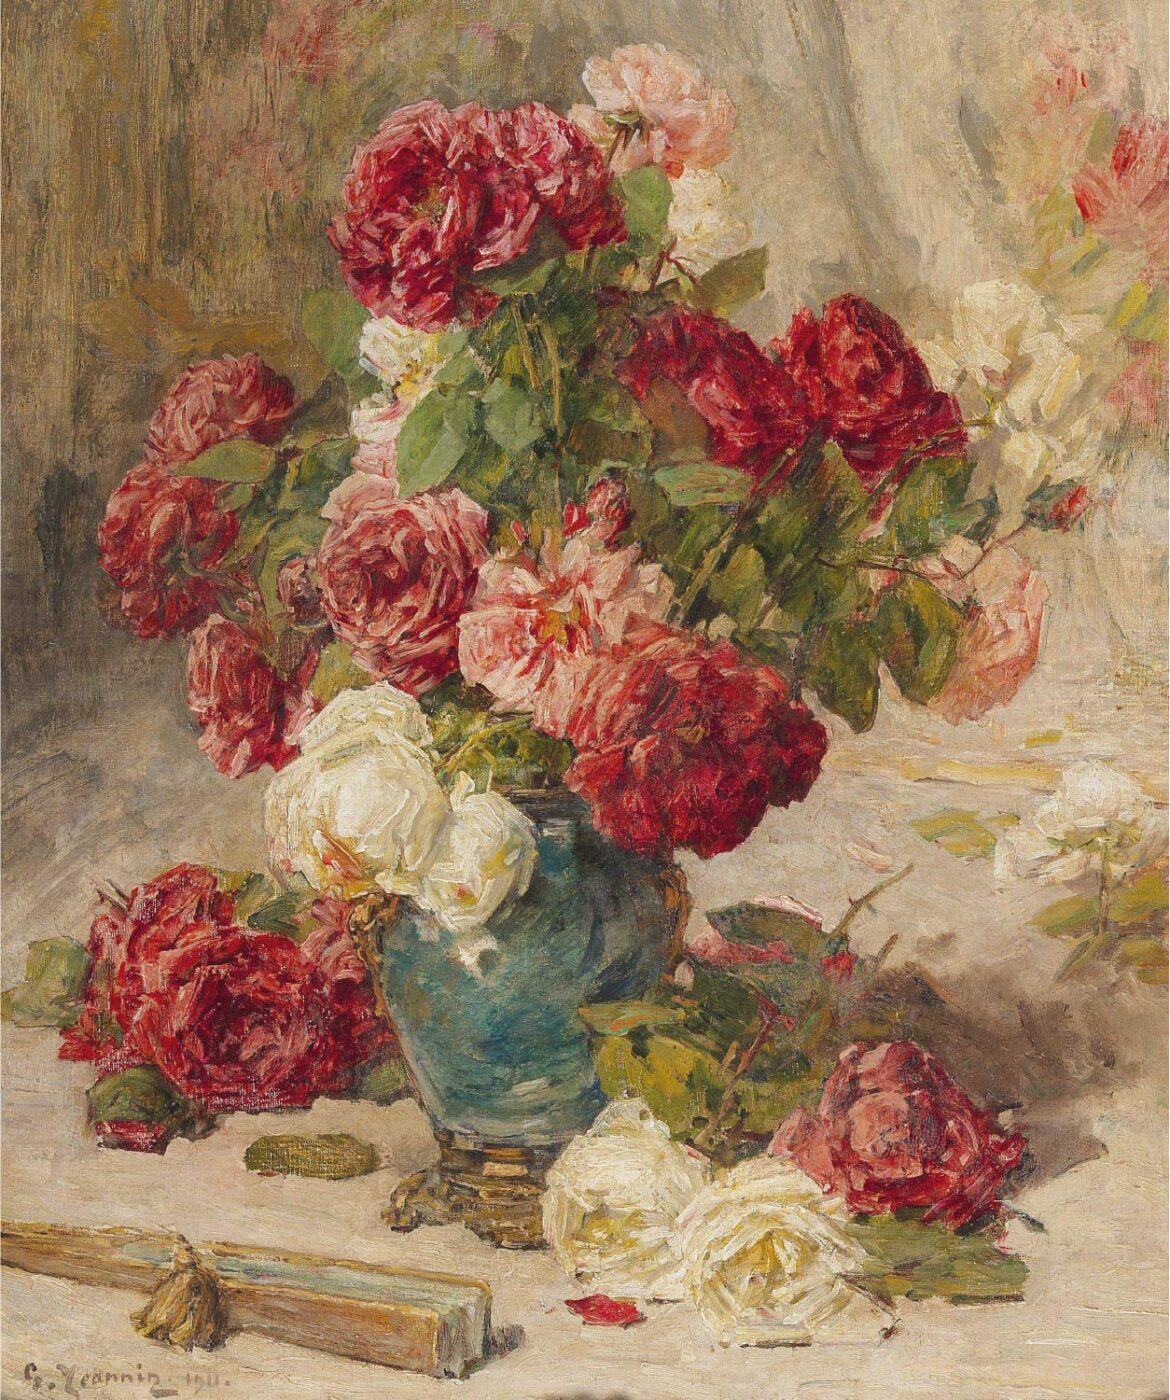 【無料壁紙】ジョルジュ・ジャナン「花瓶の薔薇と扇子の静物画 (1911)」 / Georges Jeannin_A still life with roses in a vase and a fan (1911)